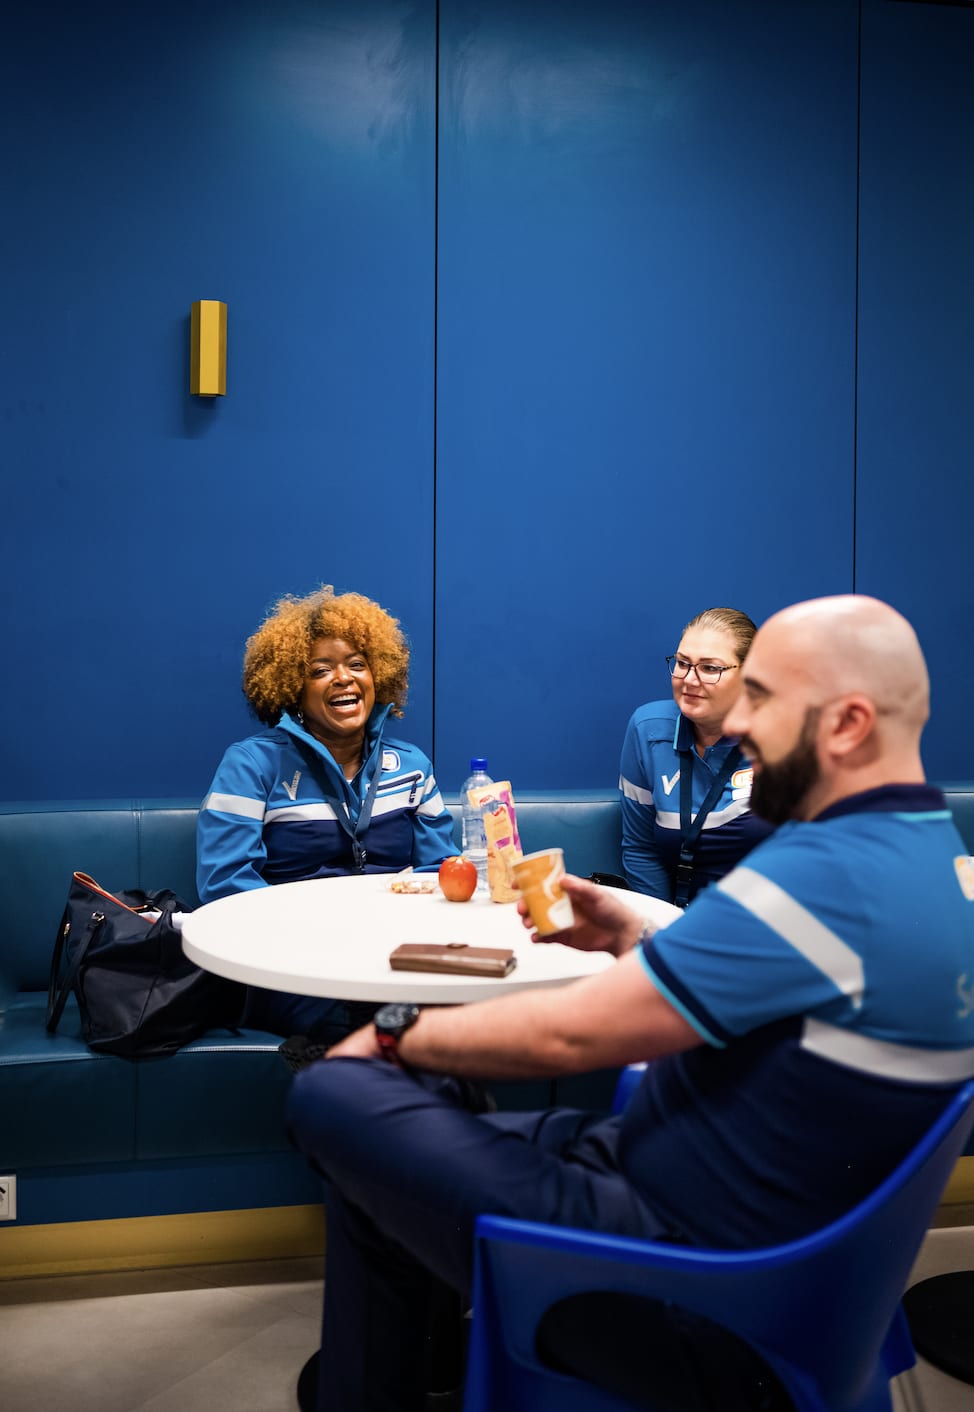 Drie beveiligingsmedewerkers in uniform genieten van een pauze en een luchtig gesprek in de blauwe personeelslounge